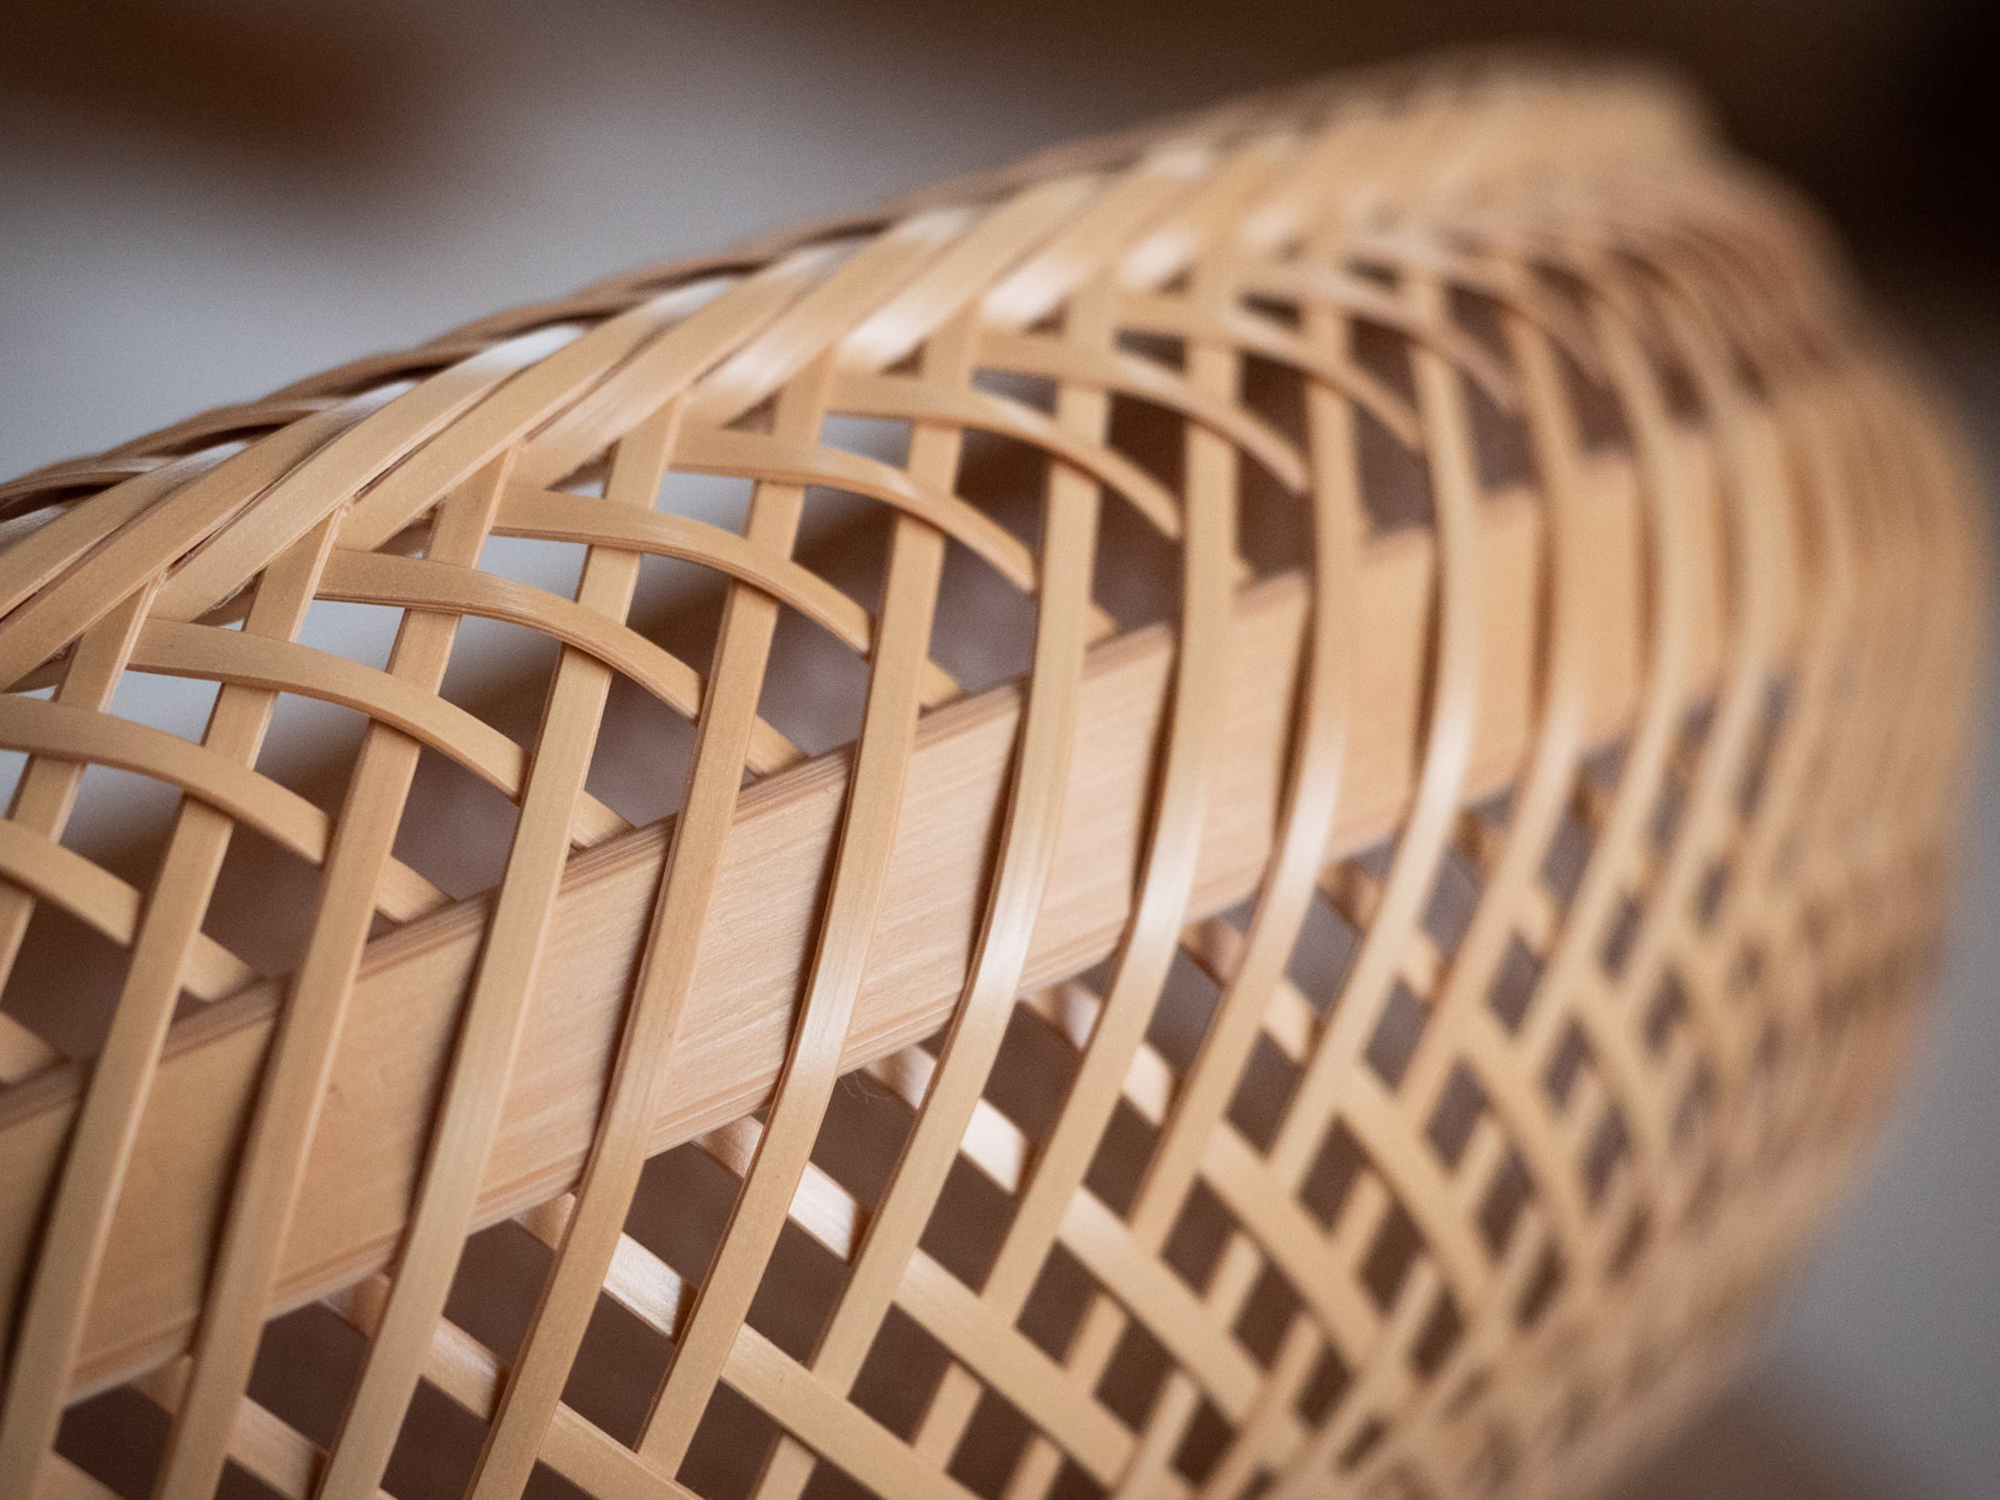 「鉄鉢盛籠（てっぱちもりかご）」という籠の側面。鉄鉢盛籠はお坊さんが托鉢の際に使用していた鉄鉢を模した籠で、別府竹細工の伝統的な編み方で作られています。